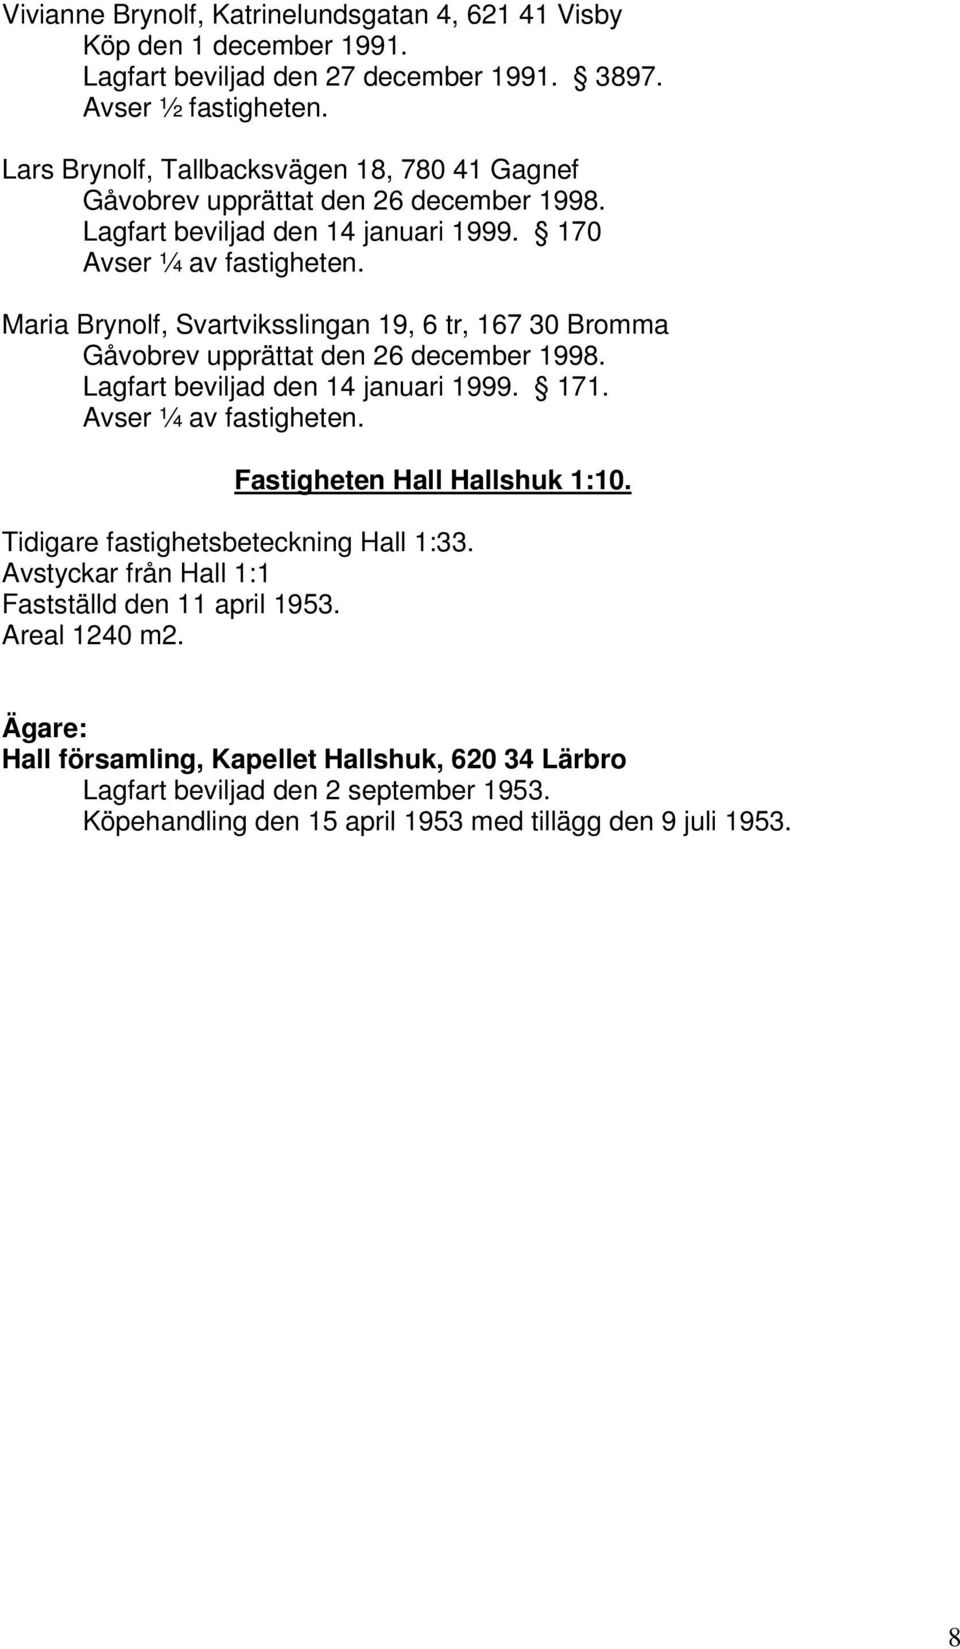 Maria Brynolf, Svartviksslingan 19, 6 tr, 167 30 Bromma Gåvobrev upprättat den 26 december 1998. Lagfart beviljad den 14 januari 1999. 171. Avser ¼ av fastigheten.